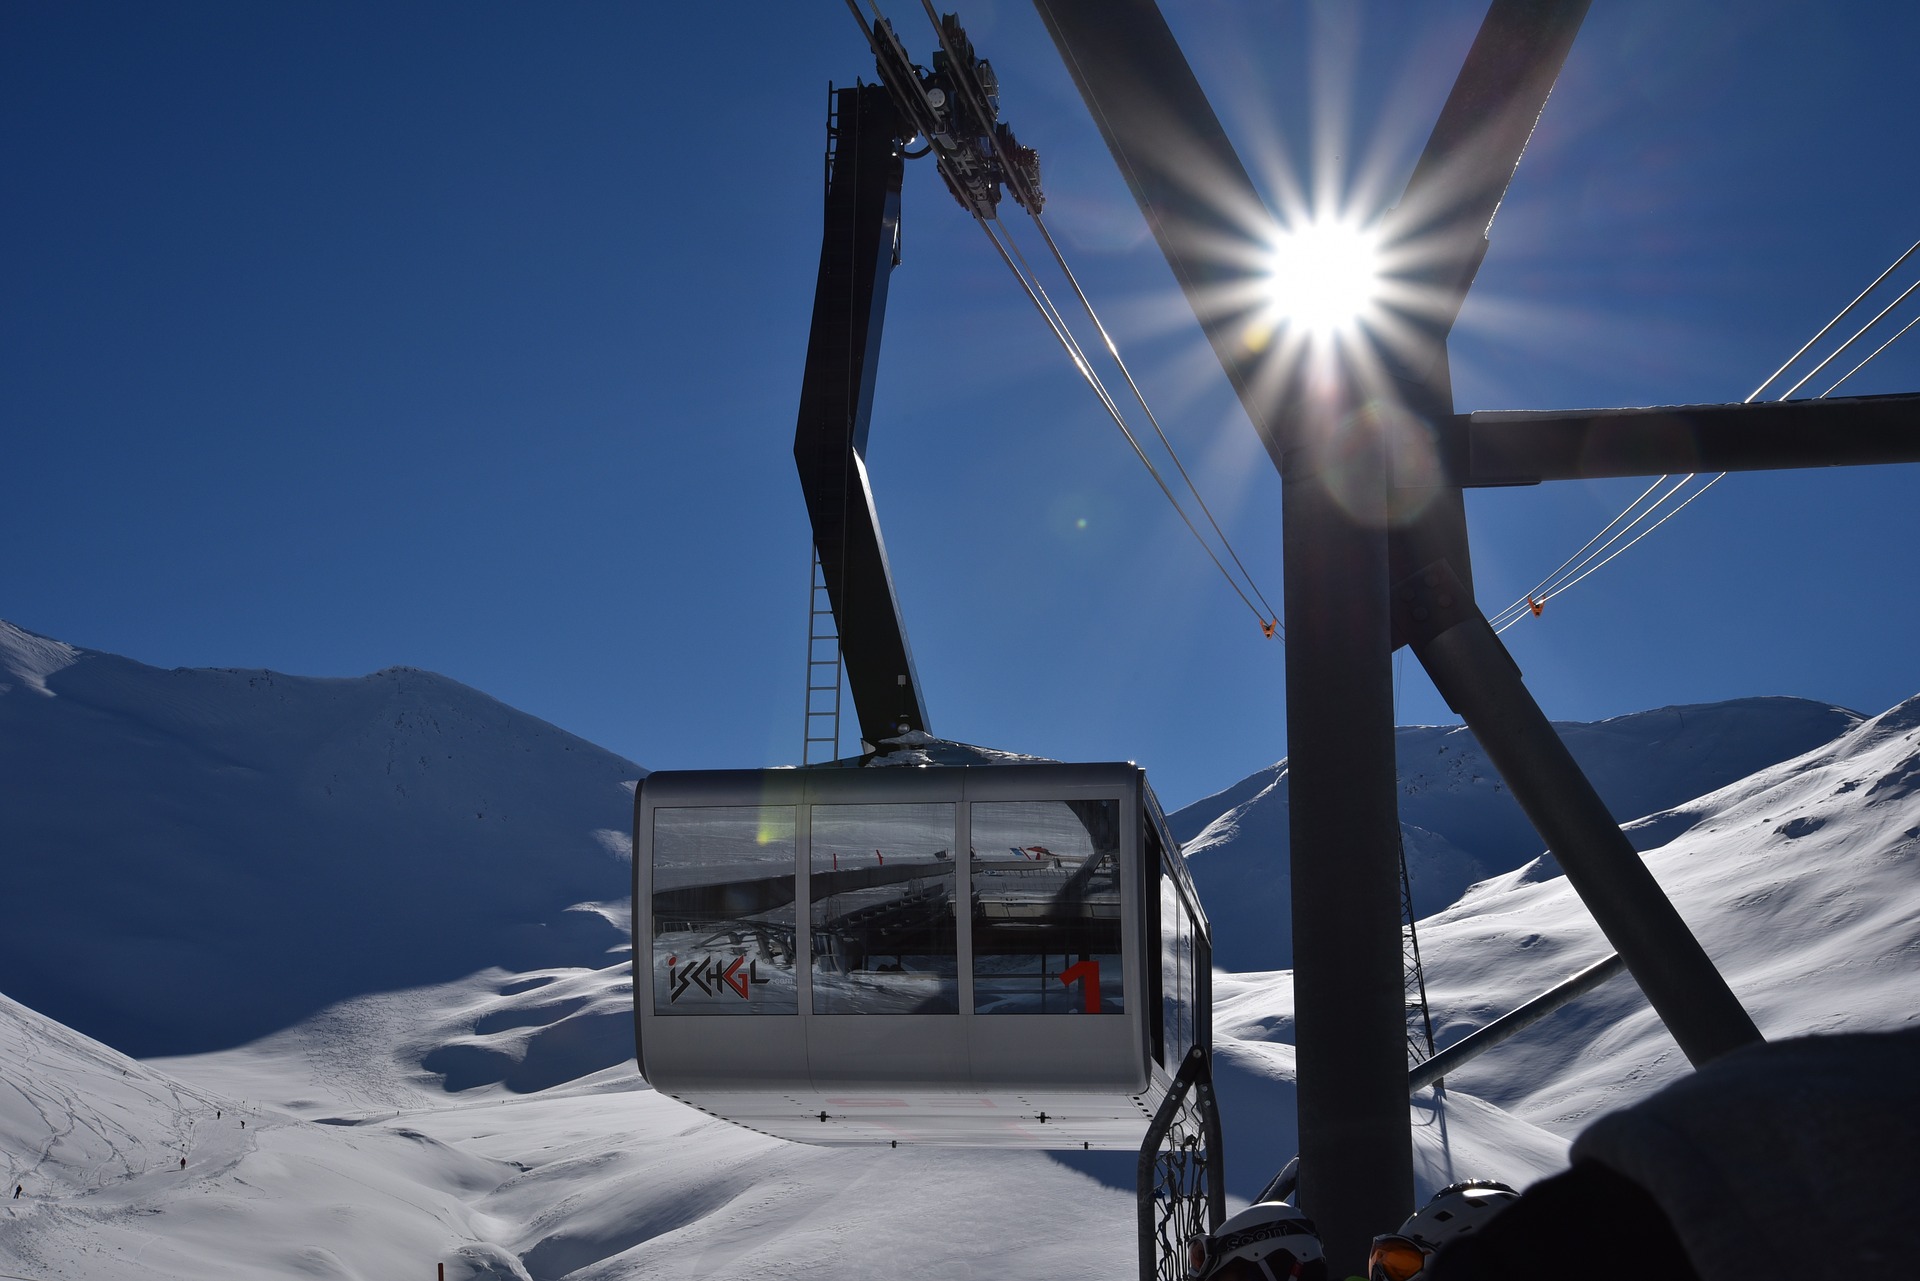 Skiurlaub in Ischgl Österreich ab 179,00€ inklusive Skipass